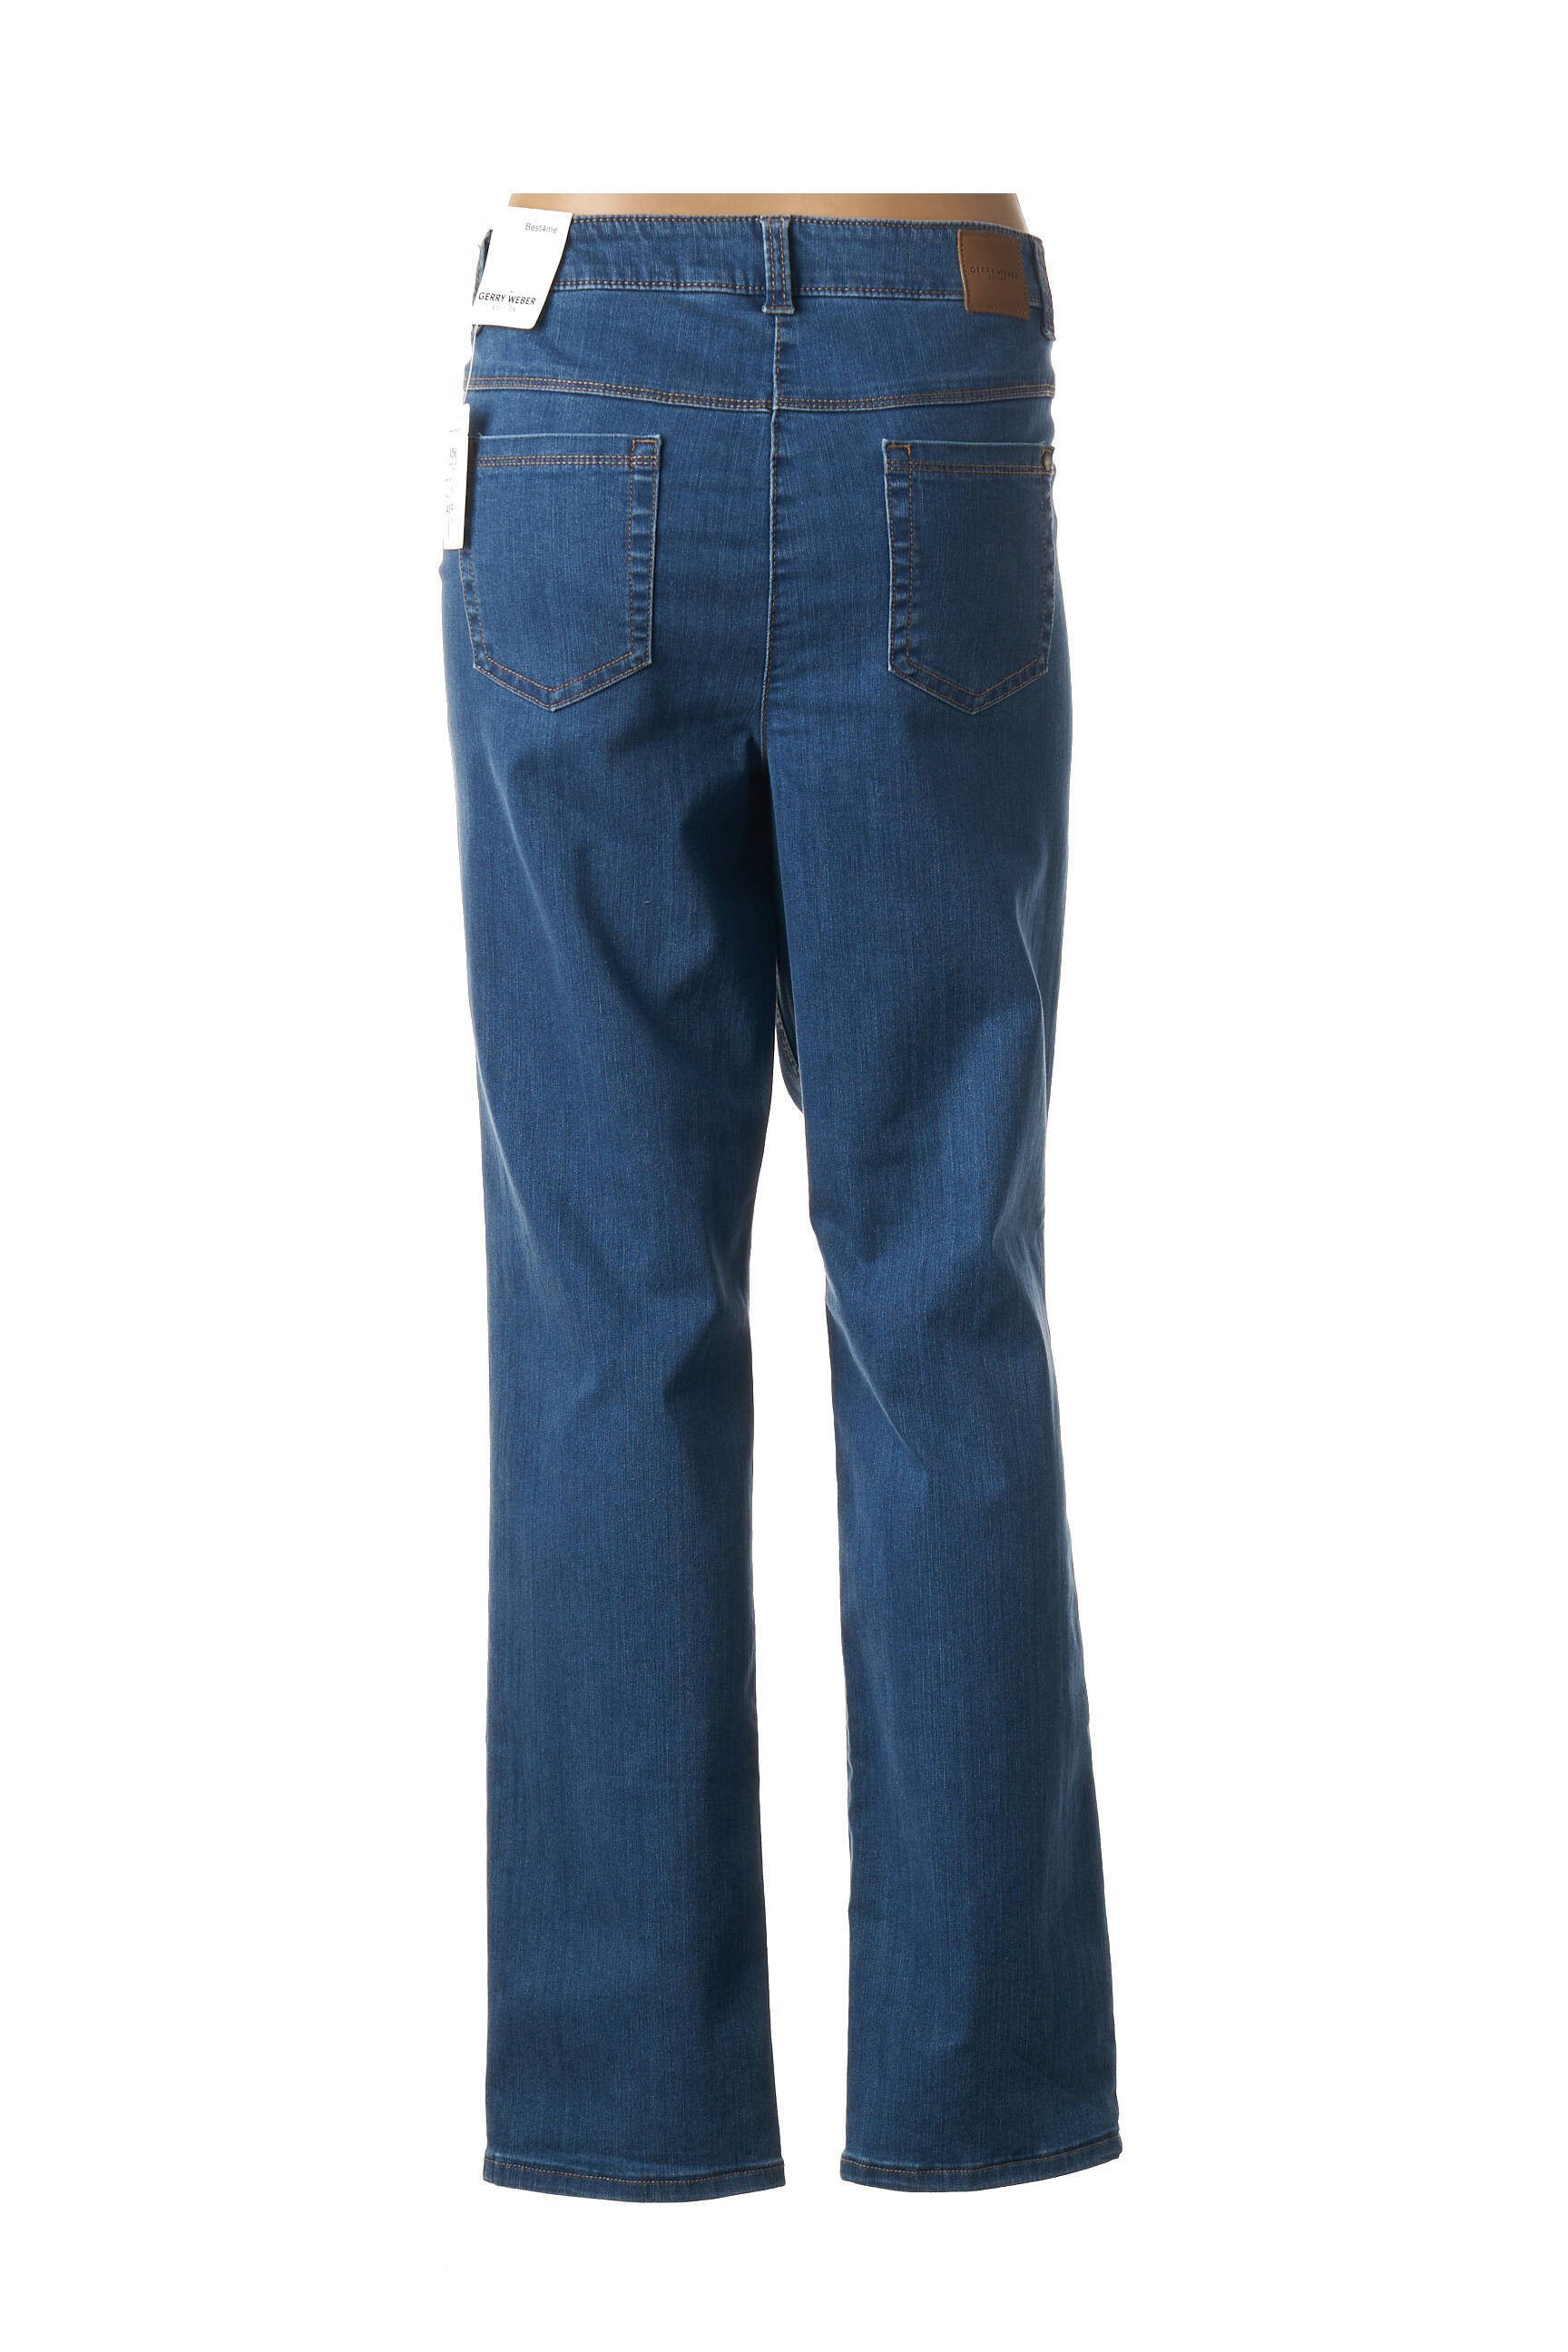 Gerry Weber Jeans coupe-droite bleu style d\u00e9contract\u00e9 Mode Jeans Jeans coupe-droite 